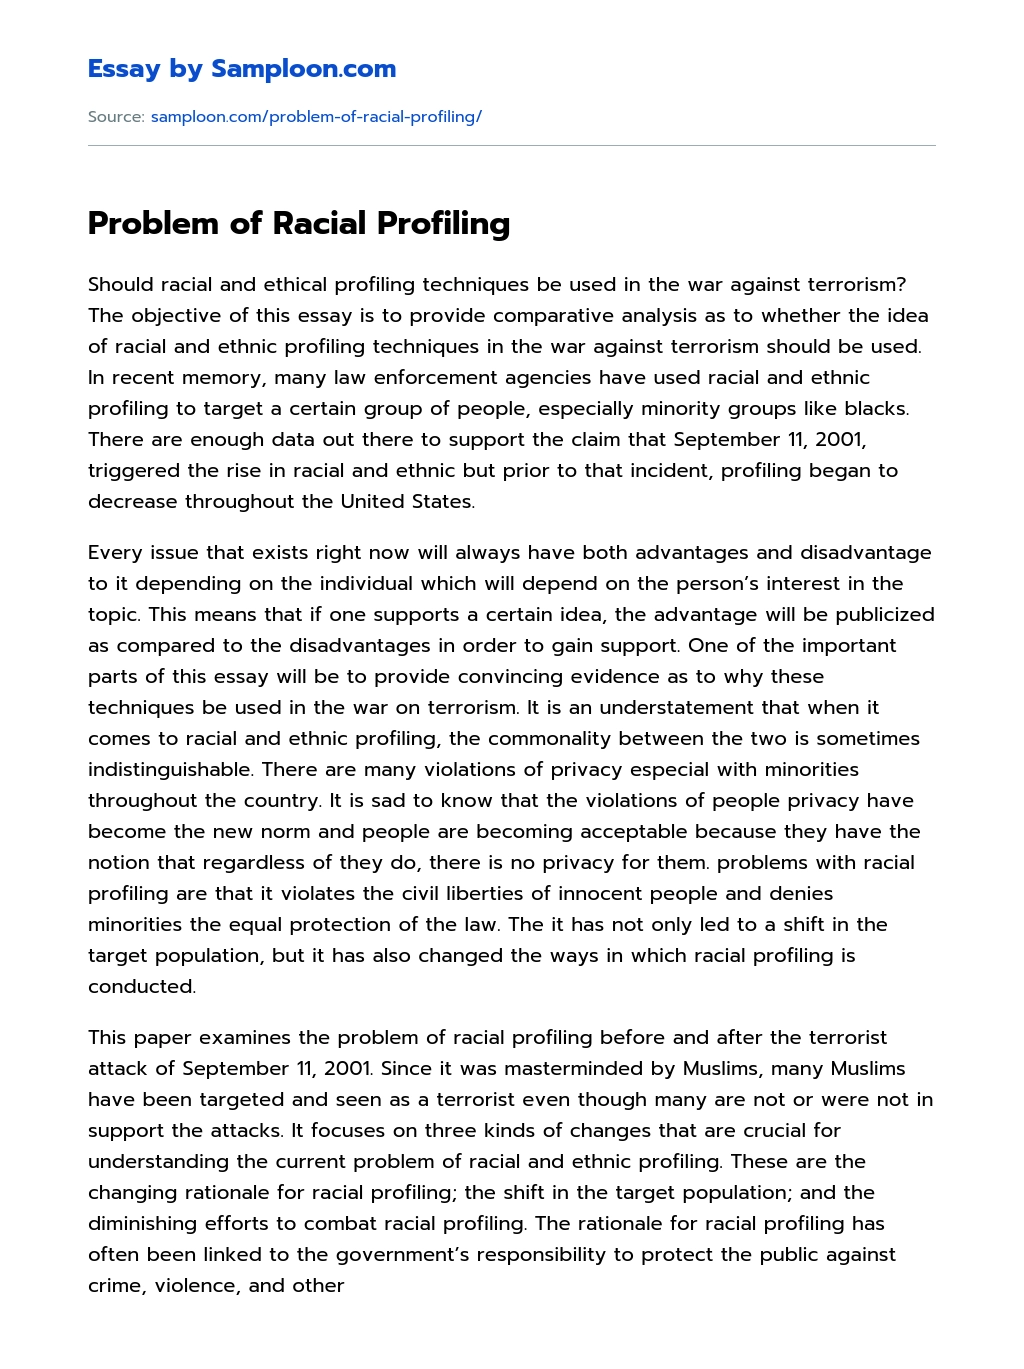 Problem of Racial Profiling essay